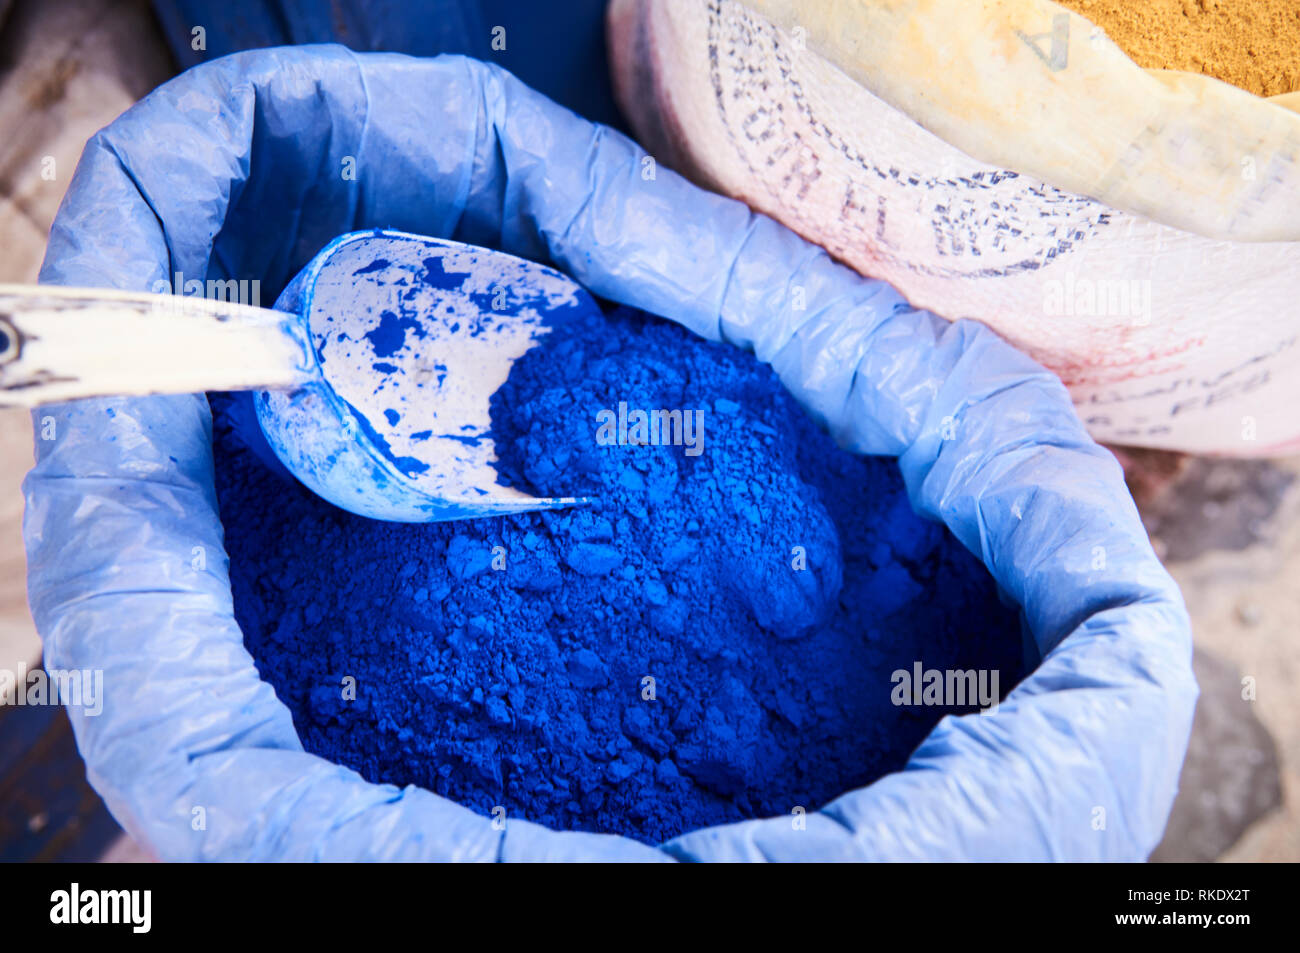 Sacs de pigments en poudre pour faire de la peinture, Chefchaouen, Maroc, Afrique du Nord Banque D'Images